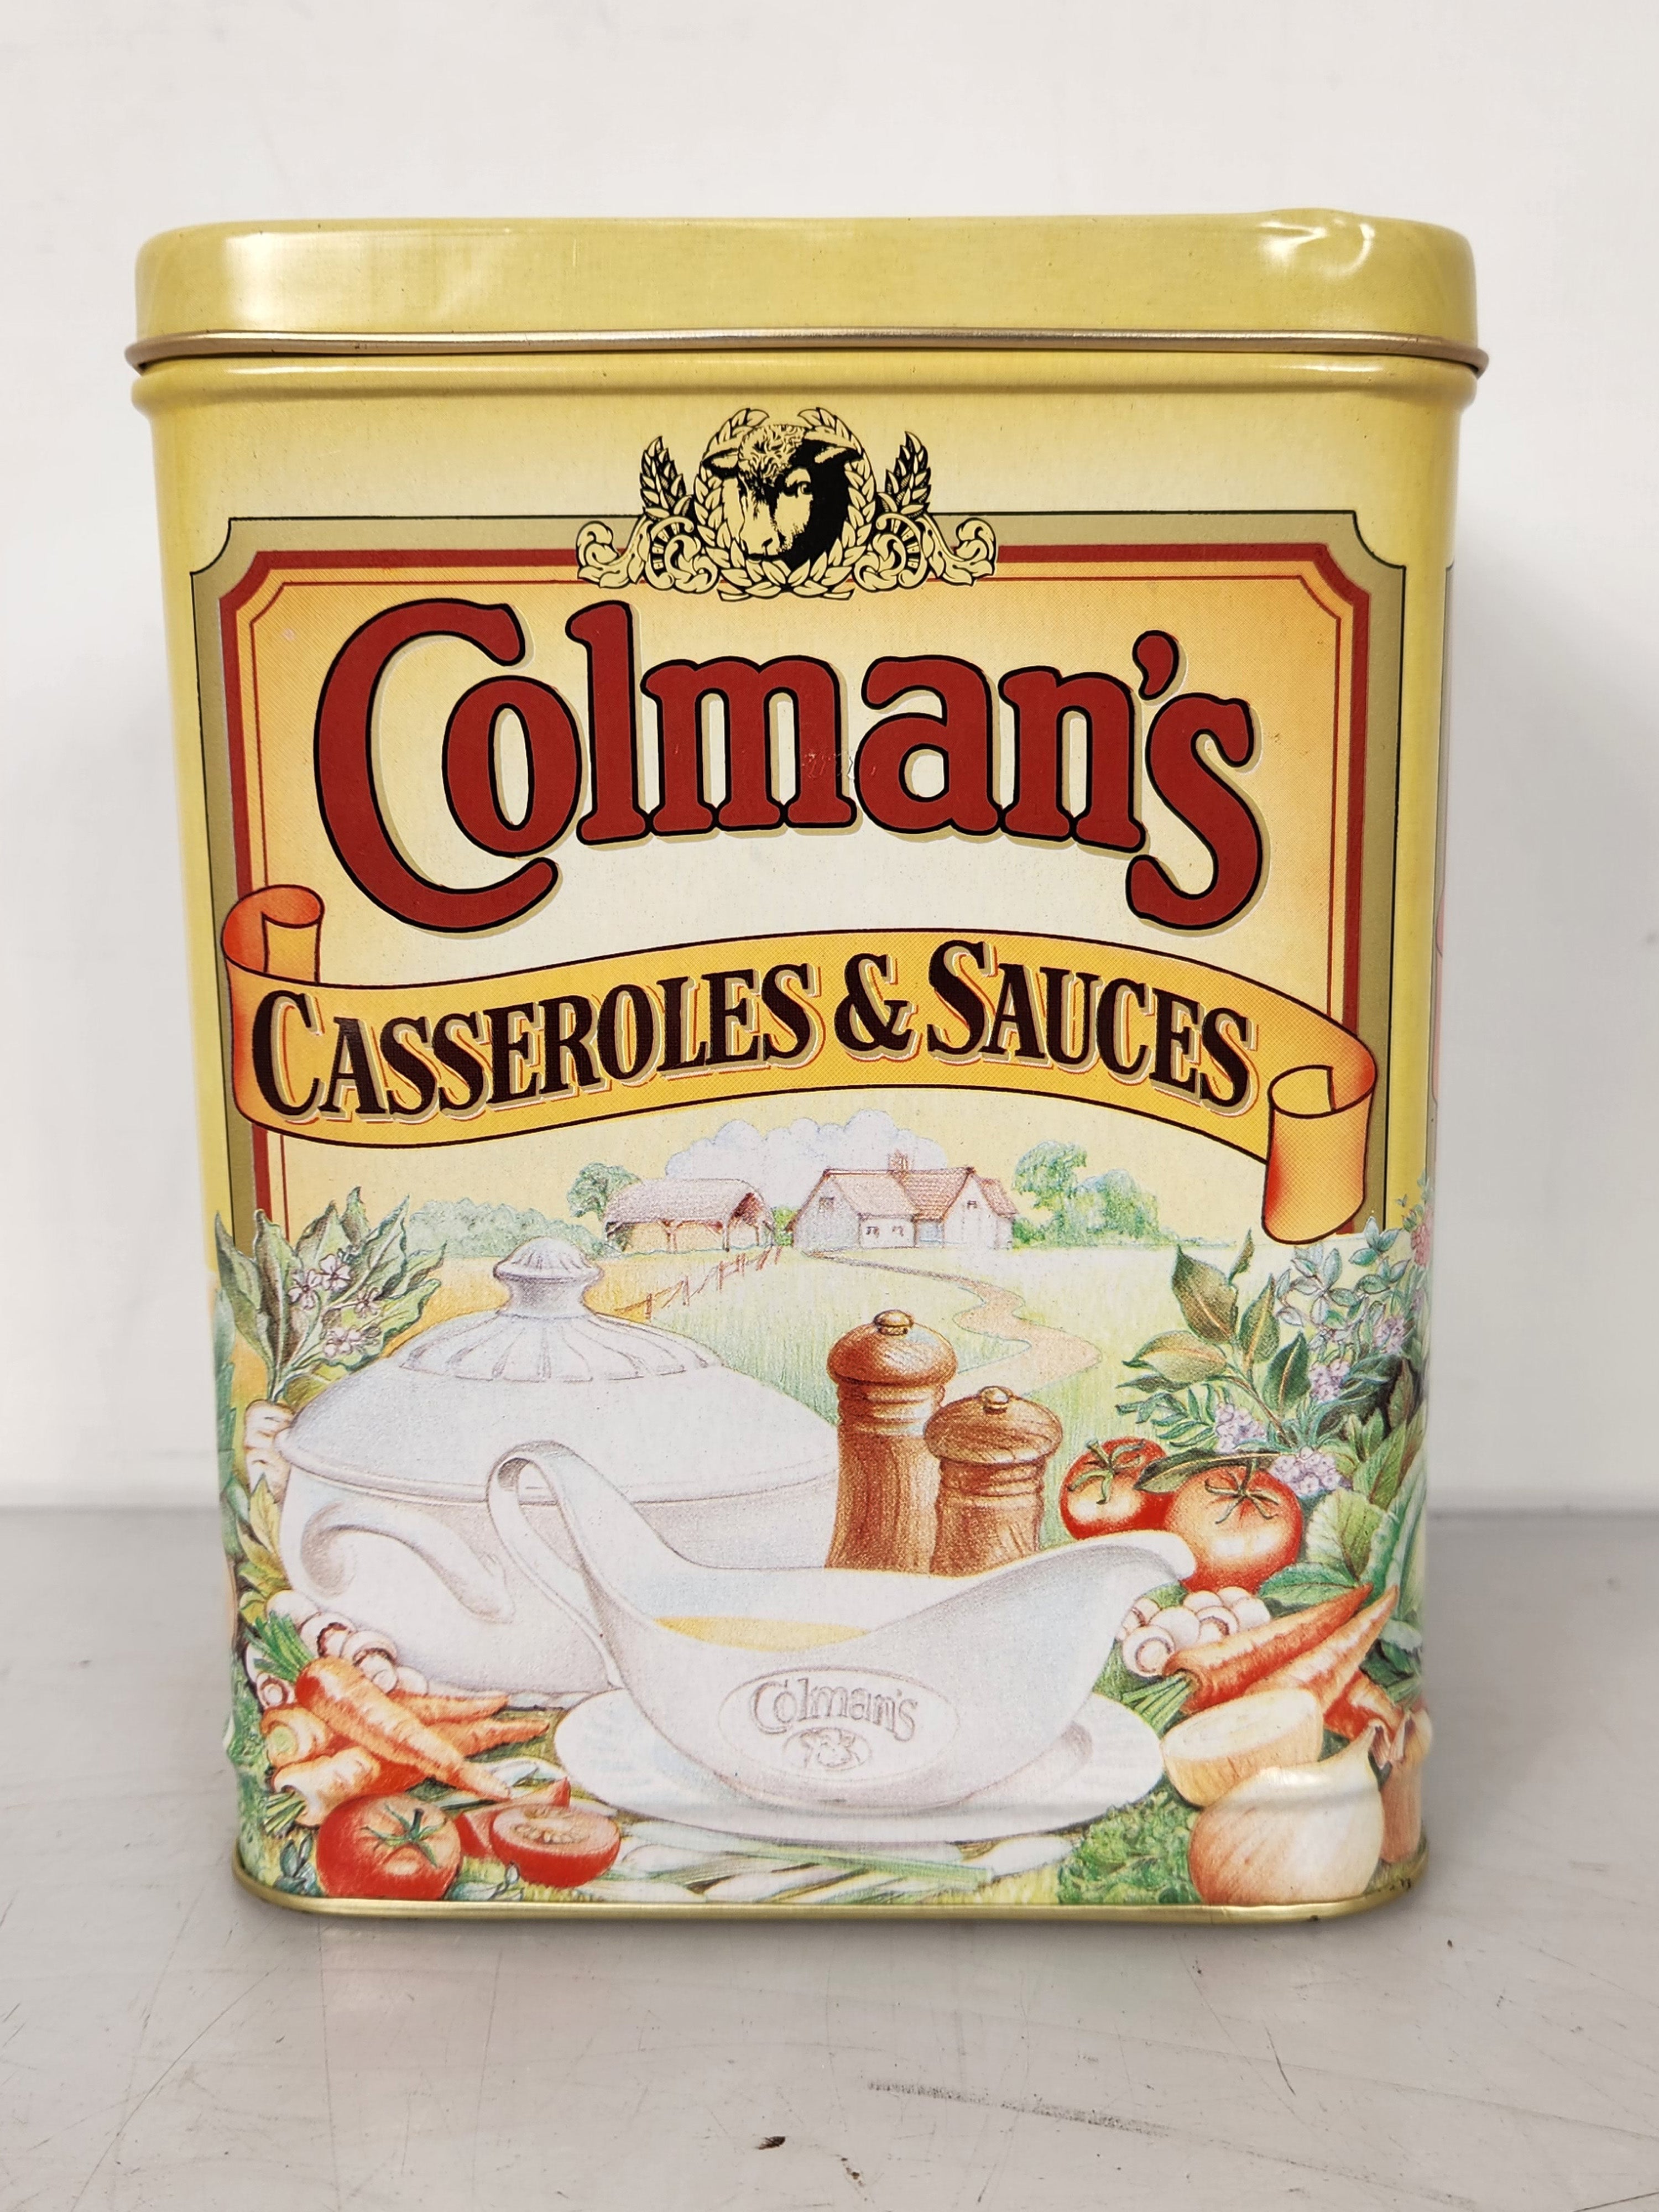 Vintage Colman's Recipe Store "Casseroles & Sauces" Tin